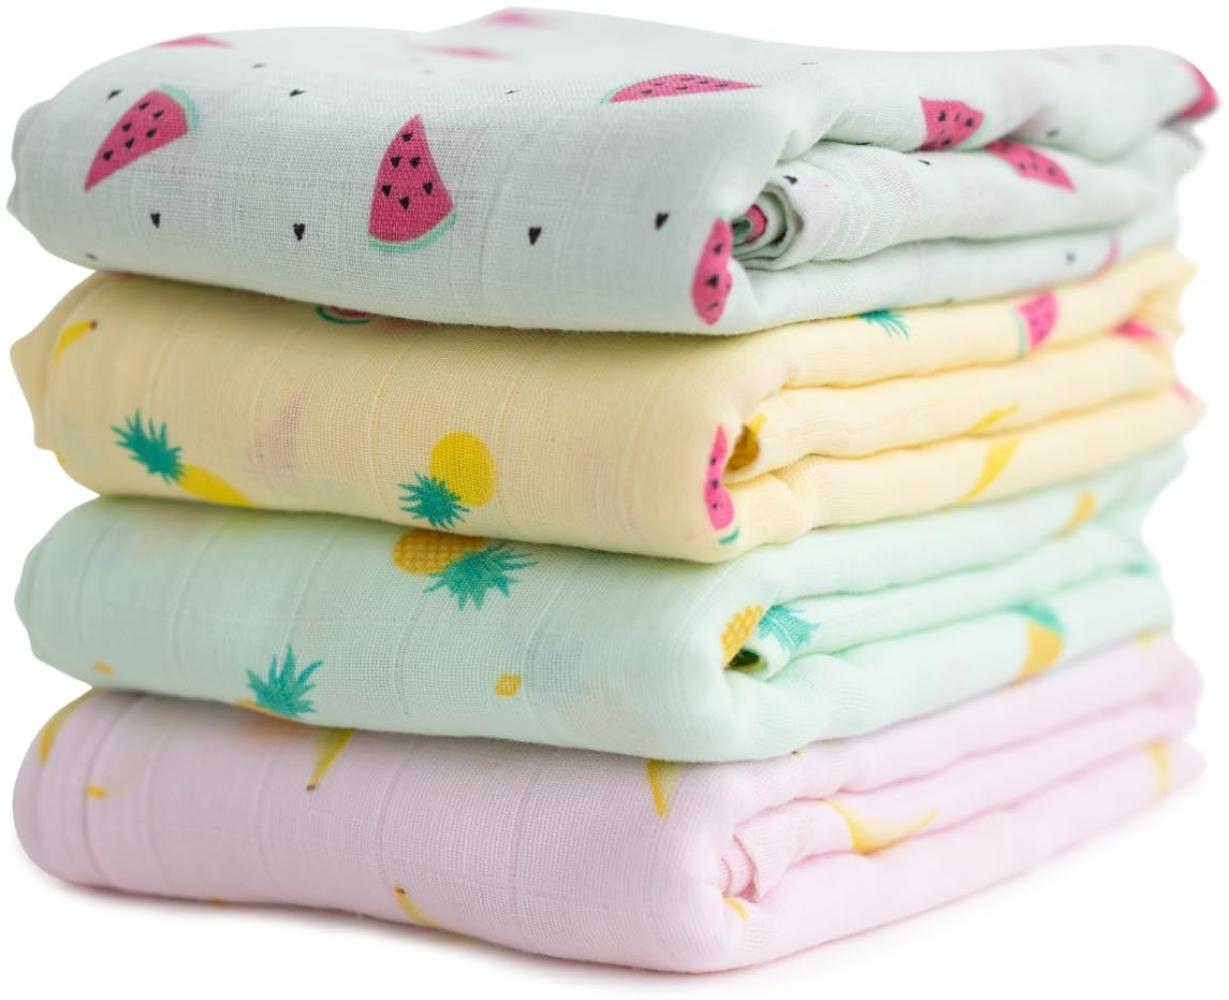 Cuddlebug „Tutti Frutti“ 4 Stück 120 cm x 120 cm lange Baby Decke für Babys | 5 Farbkollektionen | Musselin Decke | Babydecke Mädchen oder Jungen | Babydecke Baumwolle Bild 1